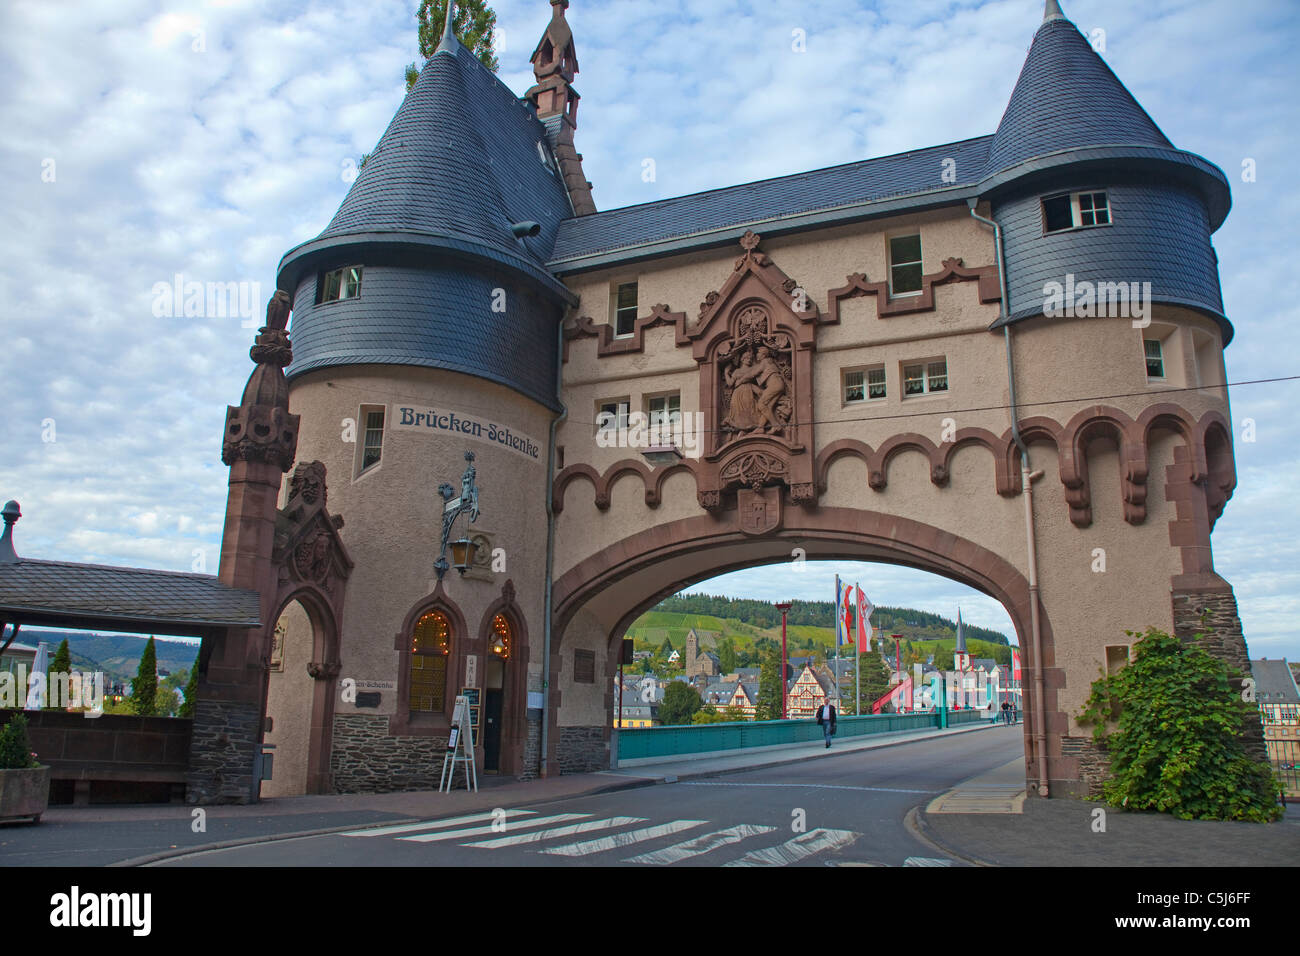 Brueckentor, Wahrzeichen von Starkenburg, Mosel, Bridge gate, monument de Traben-Trarbach, Moselle Banque D'Images